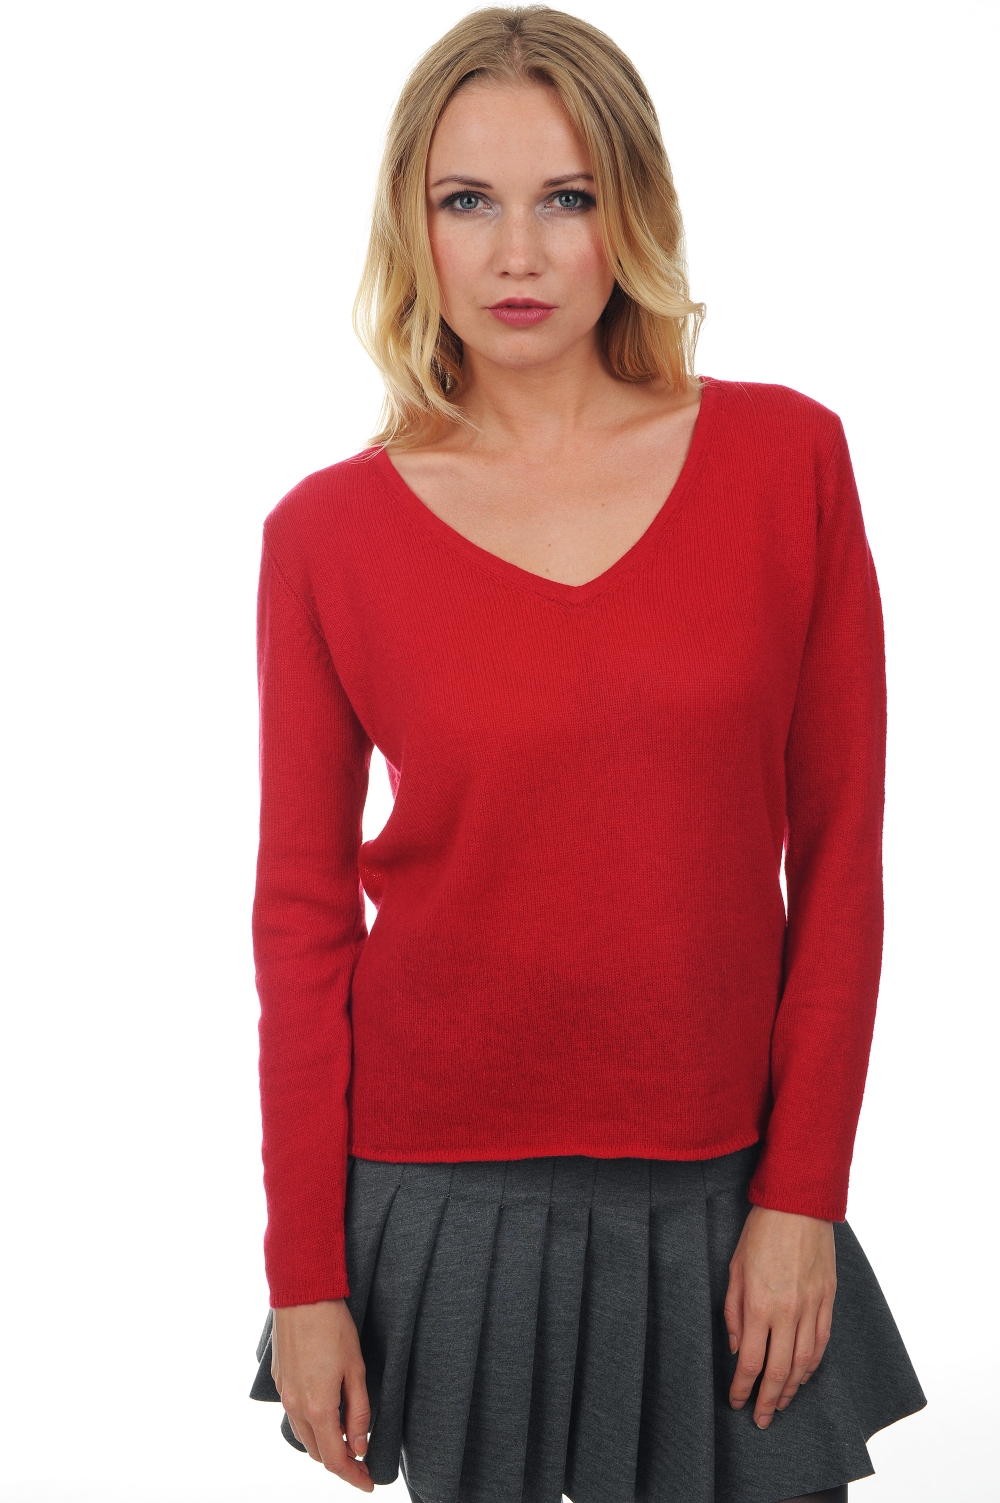 Cashmere cashmere donna essenziali low cost flavie rosso rubino s